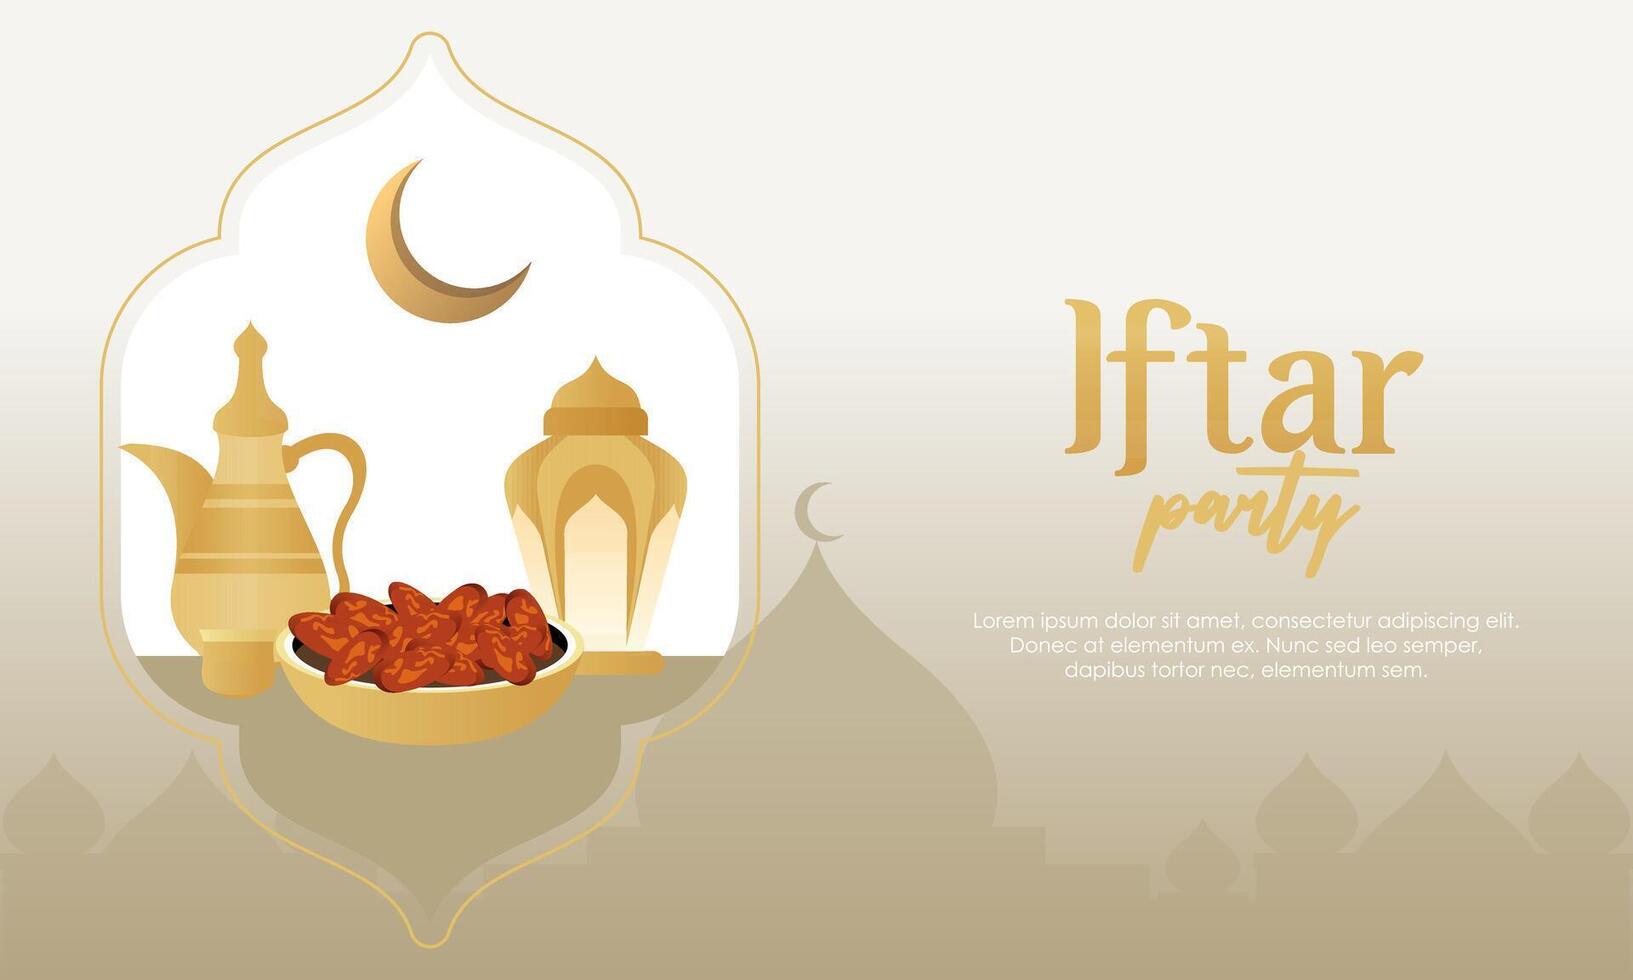 iftar partij viering concept folder vector illustratie